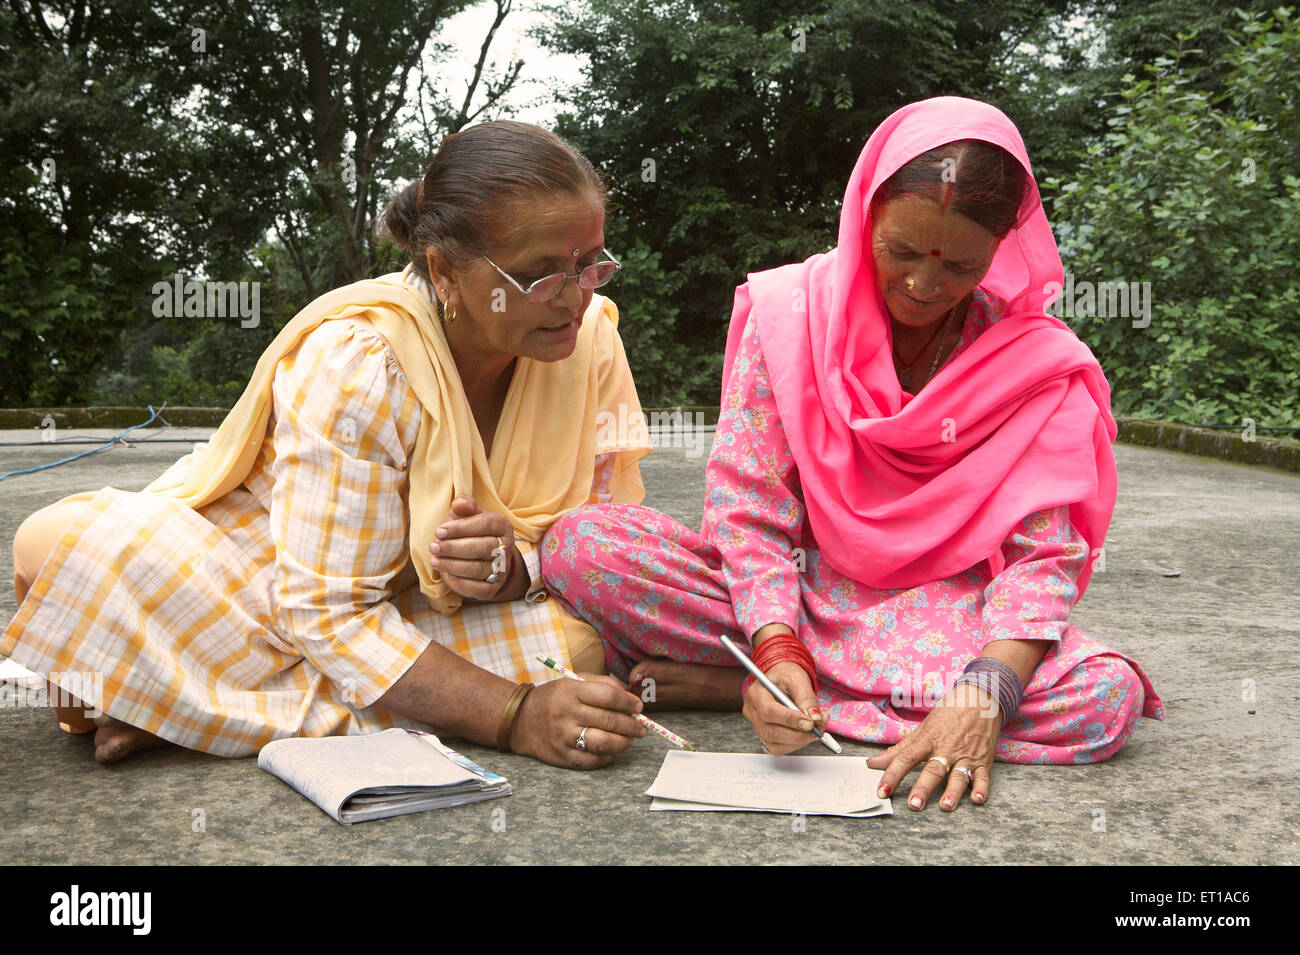 Femme volontaire enseignant à la vieille dame d'écrire le programme d'alphabétisation des adultes initiative socio-économique lancée par l'ONG Chinmaya Organisation Inde Asie Banque D'Images